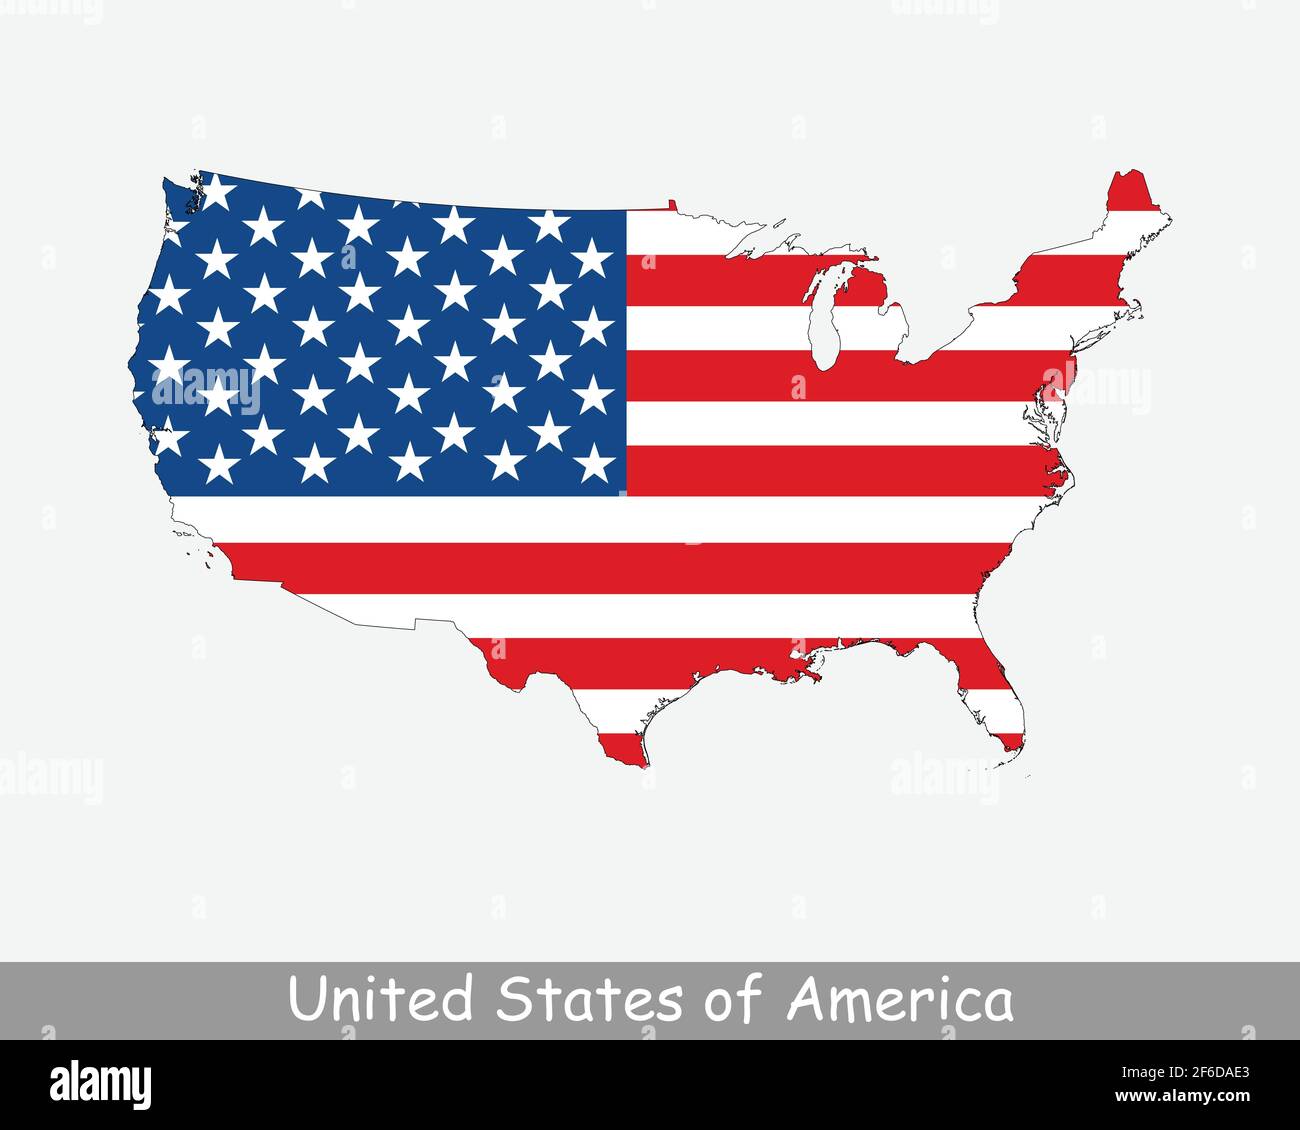 Etats-Unis d'Amérique carte des drapeaux des Etats-Unis. Carte des Etats-Unis avec le drapeau national américain isolé sur fond blanc. Illustration vectorielle. Illustration de Vecteur